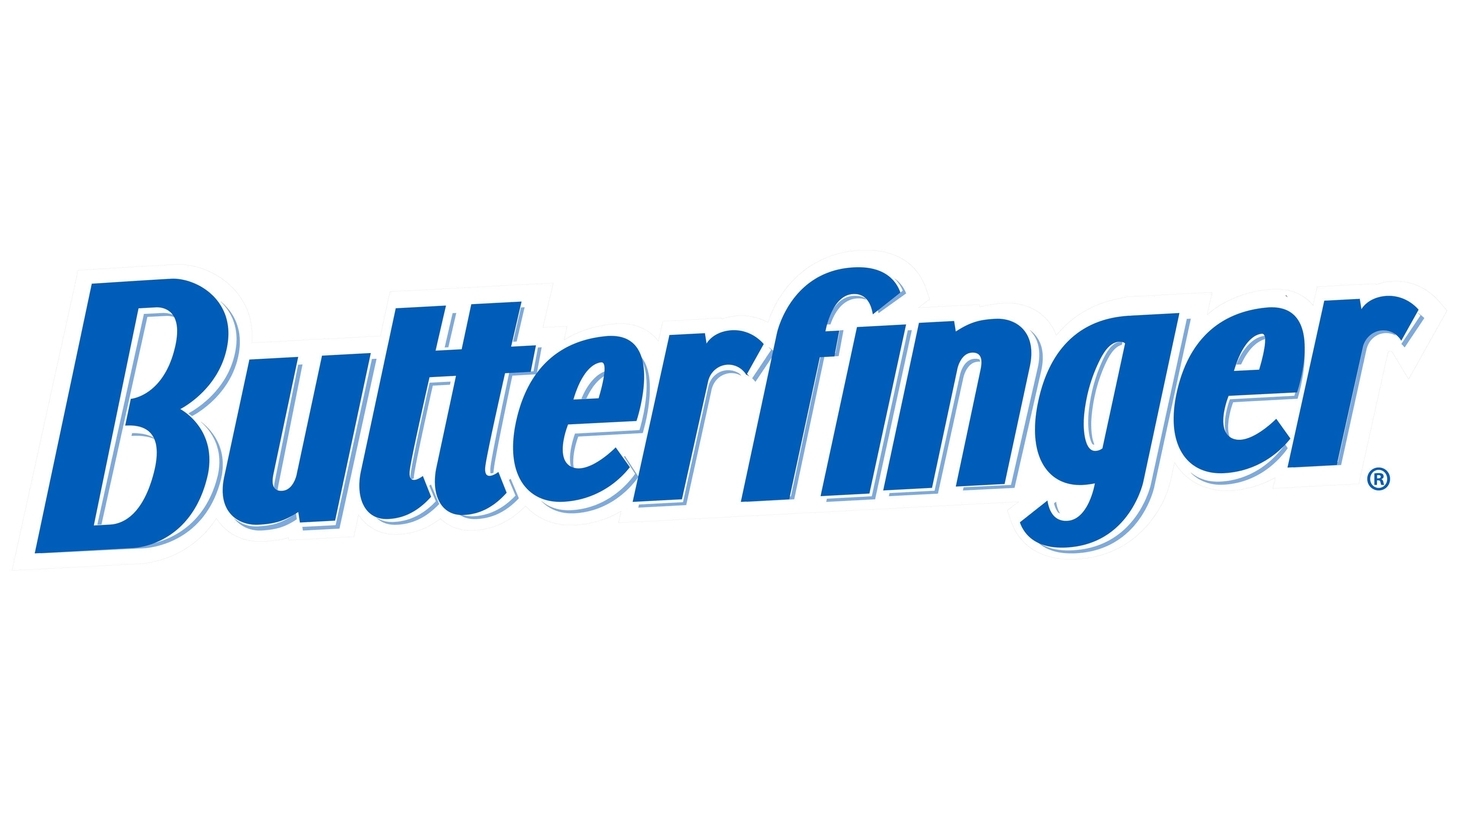 Butterfinger sign